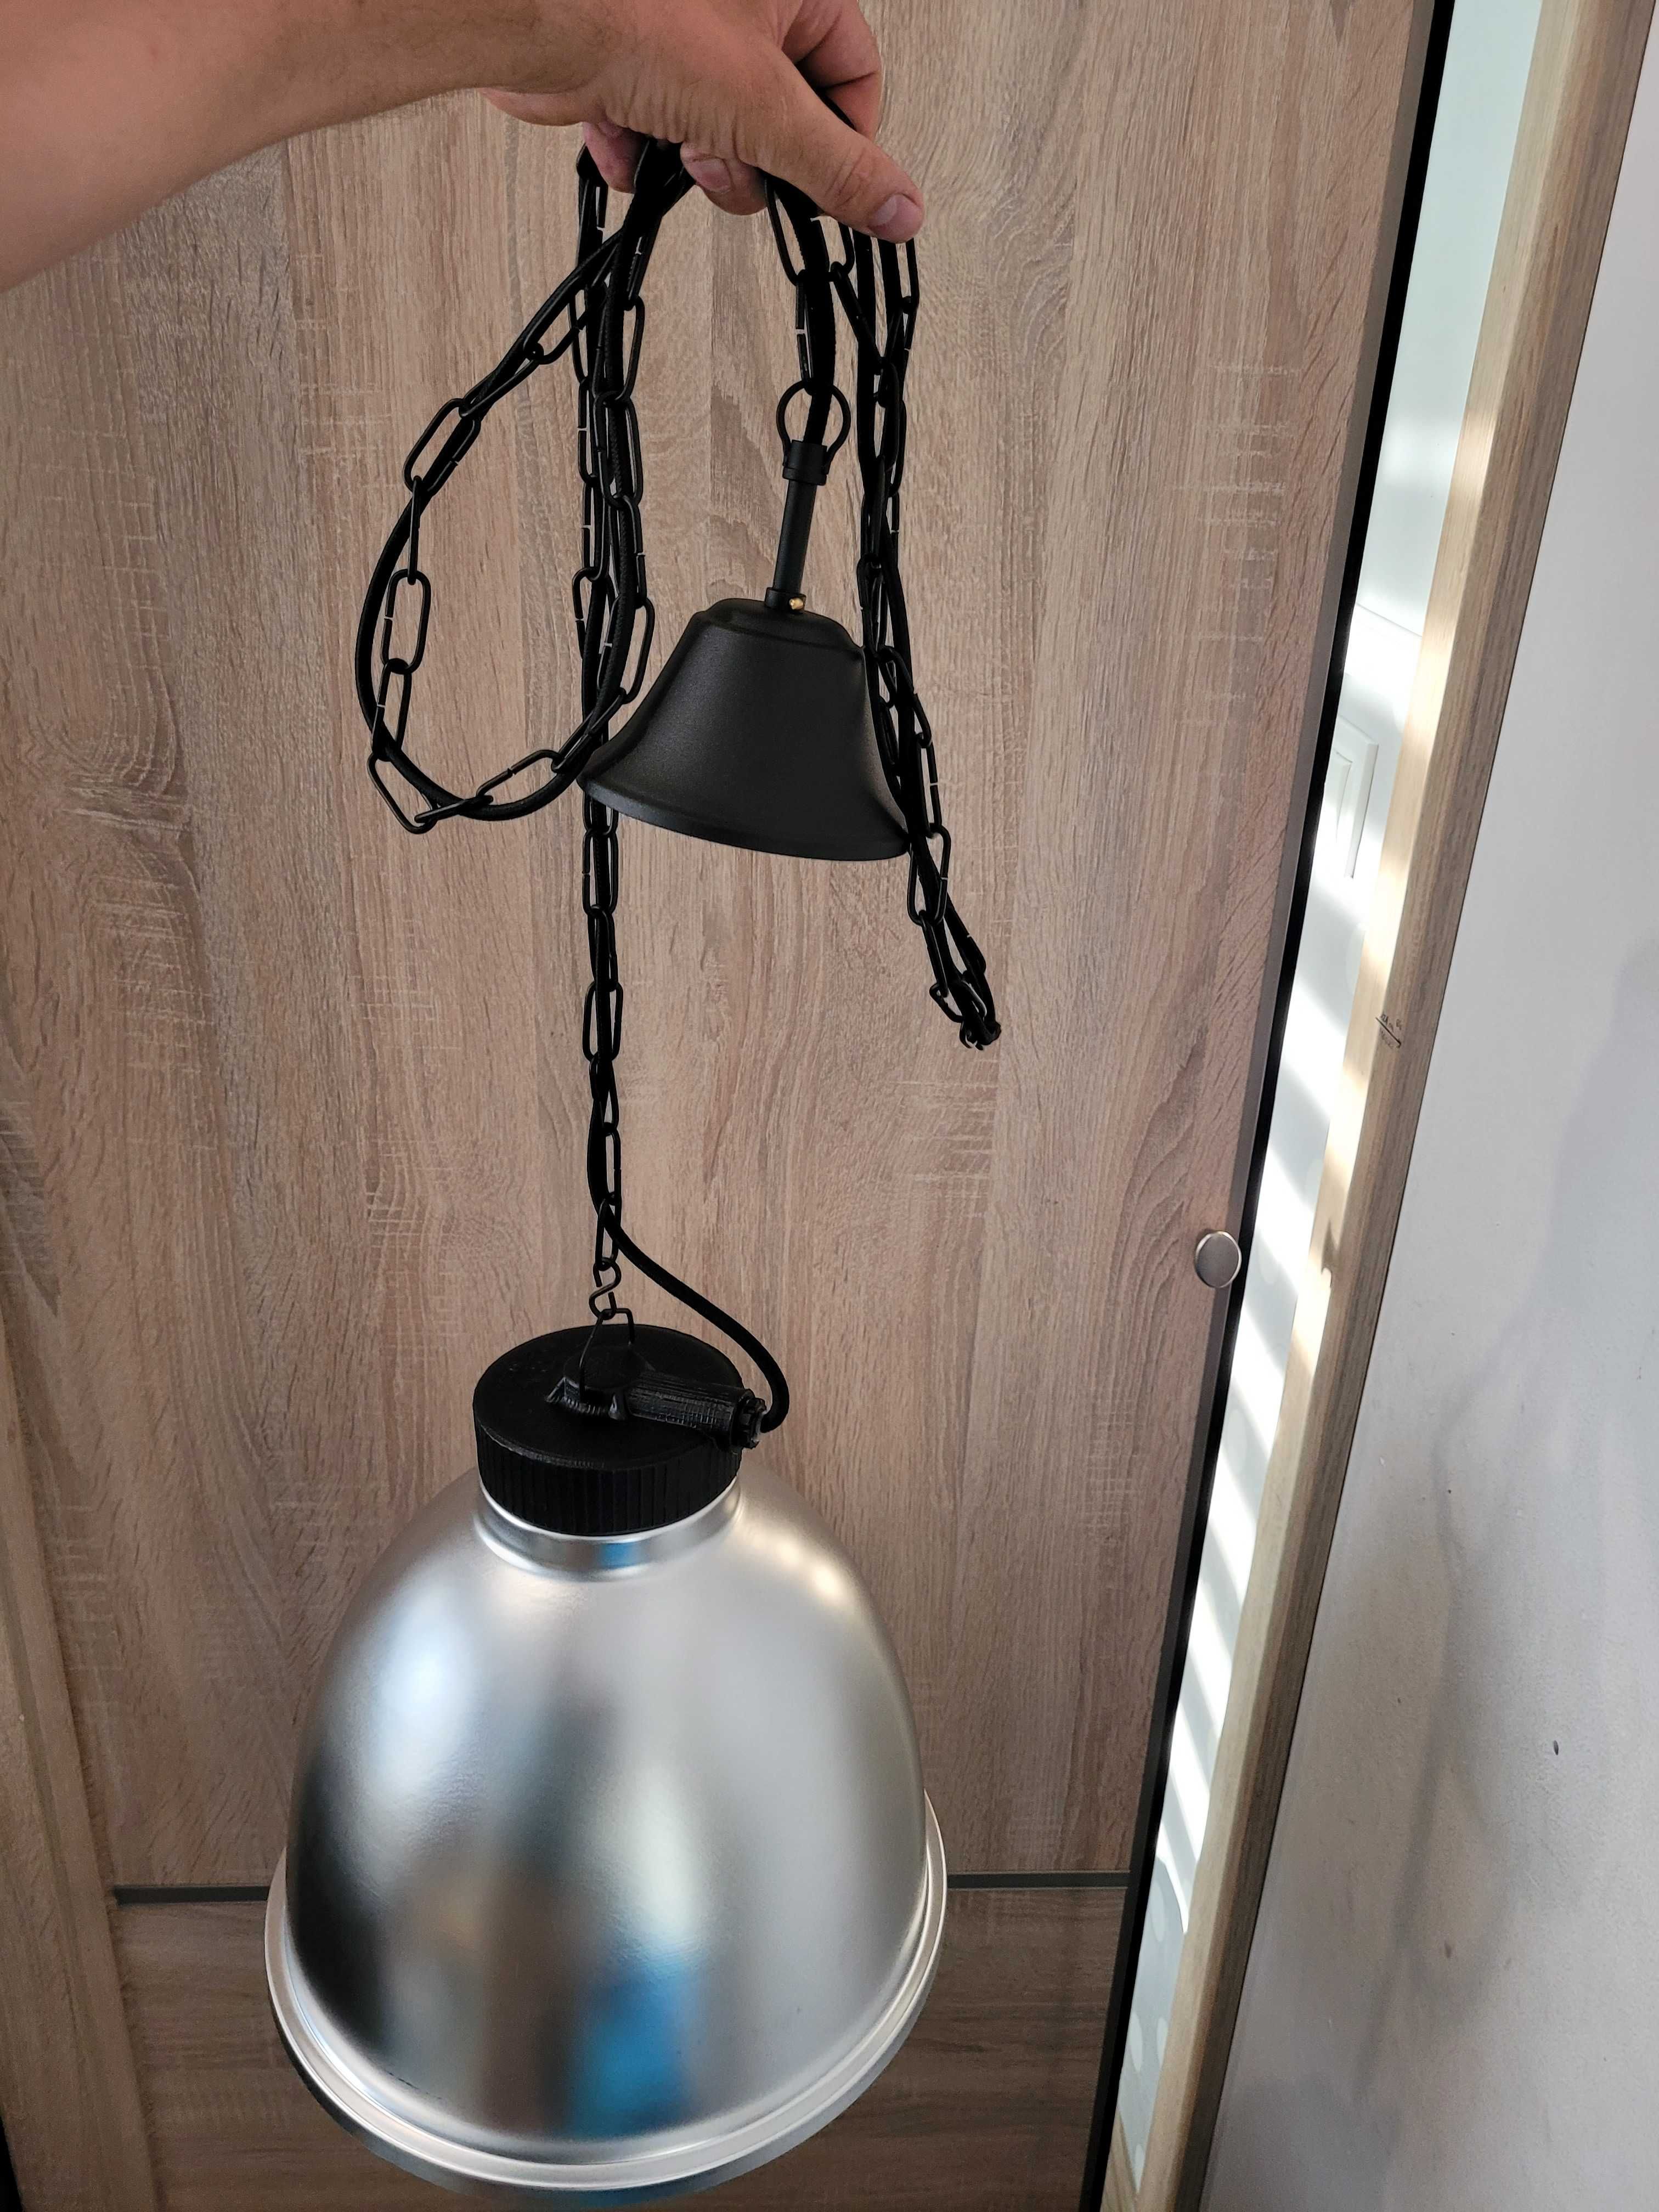 Lampa typu Loft srebrna aluminium wykonana wkasnorecznie.